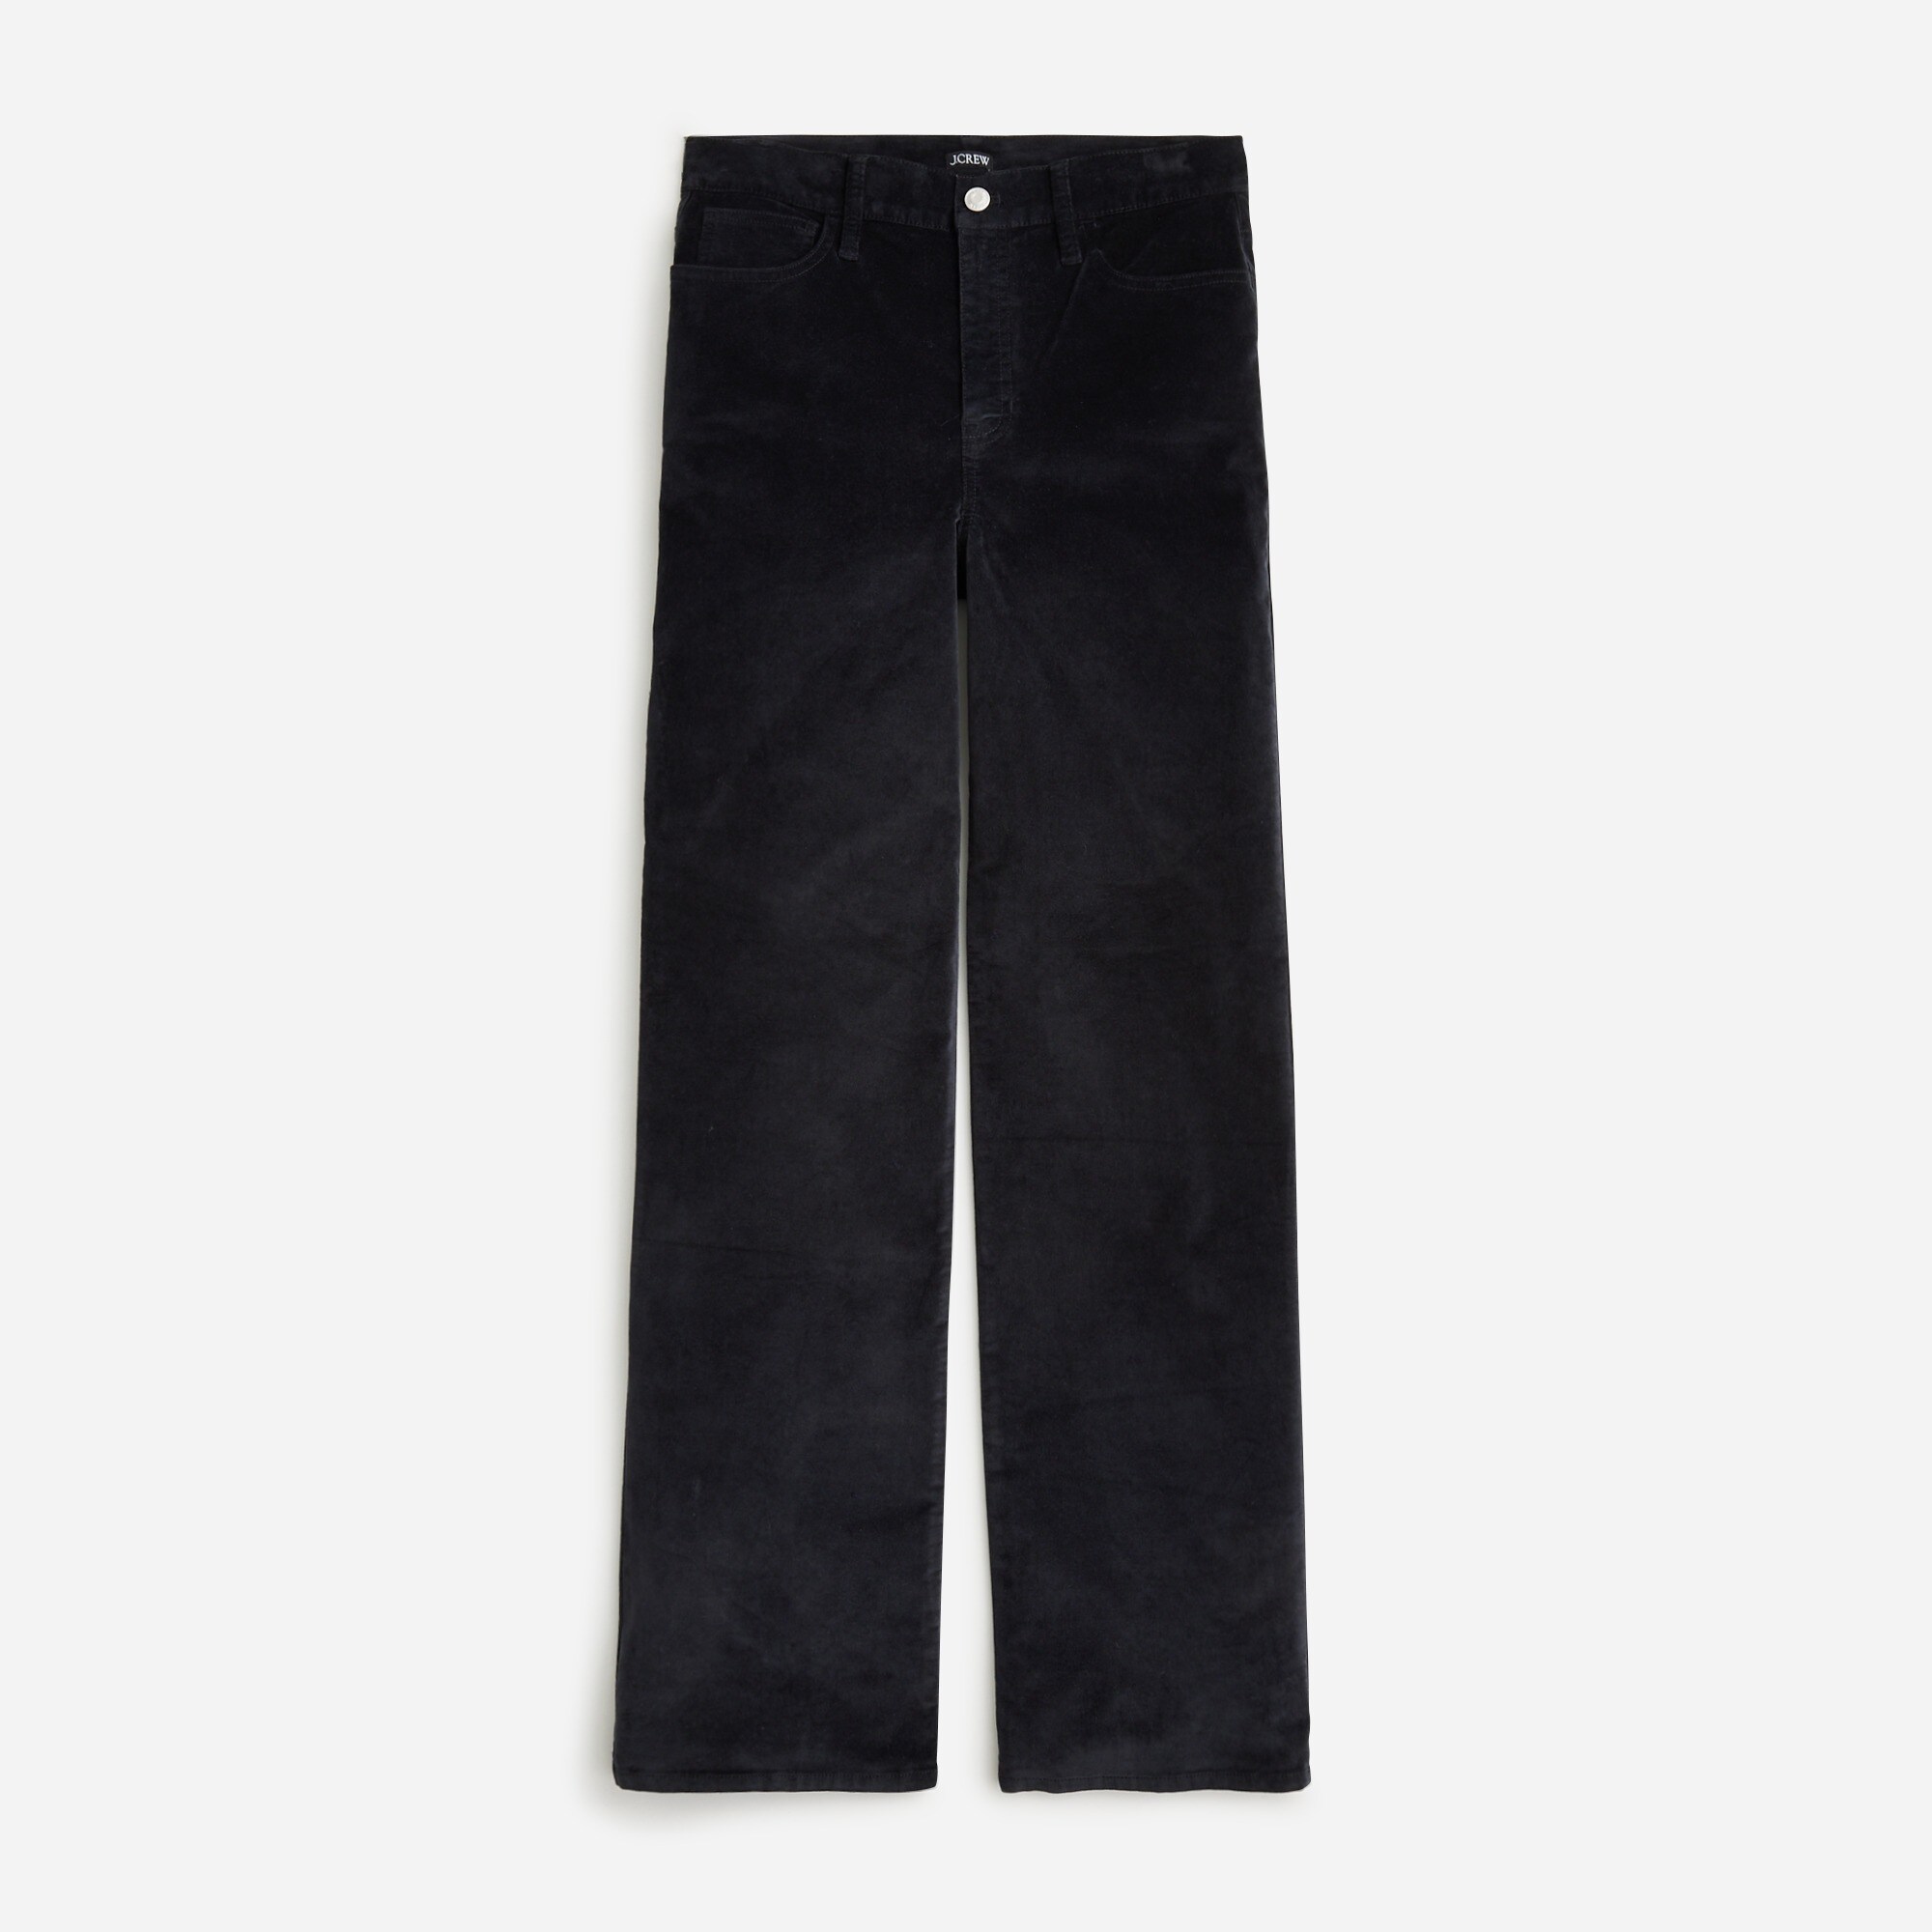  Petite full-length slim wide-leg pant in stretch velvet